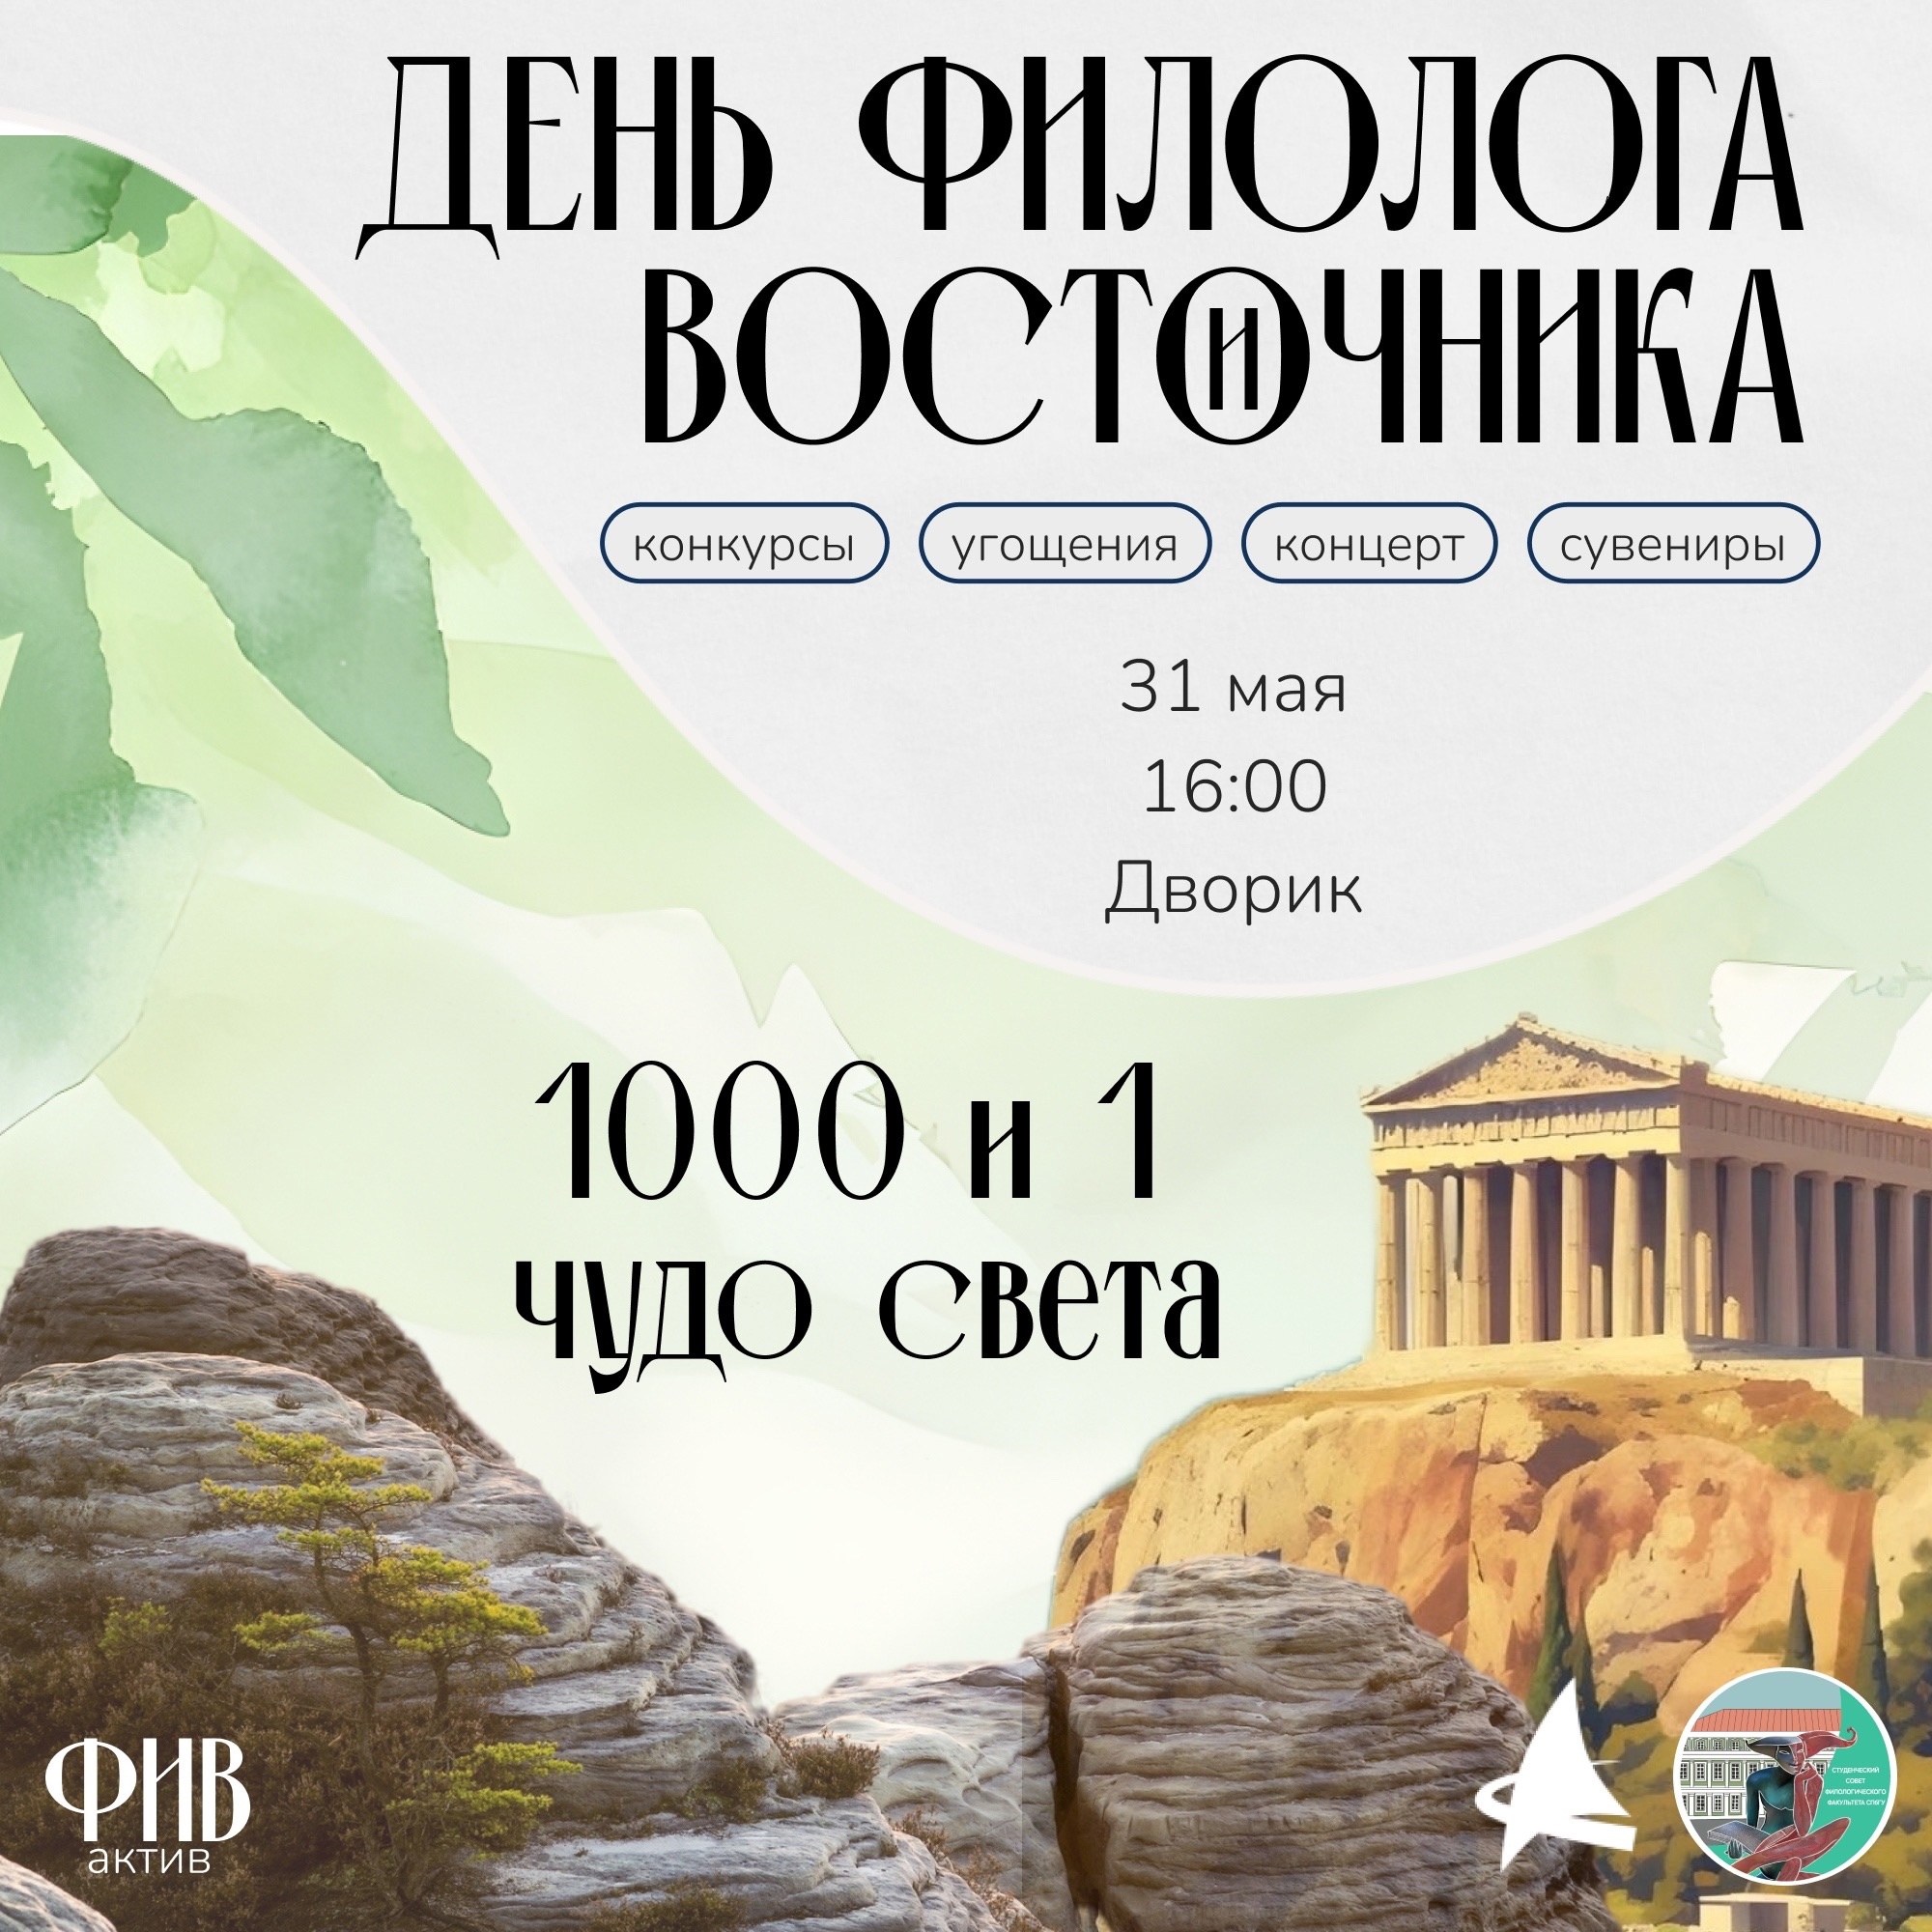  31 мая в СПбГУ состоится День Филолога и Восточника